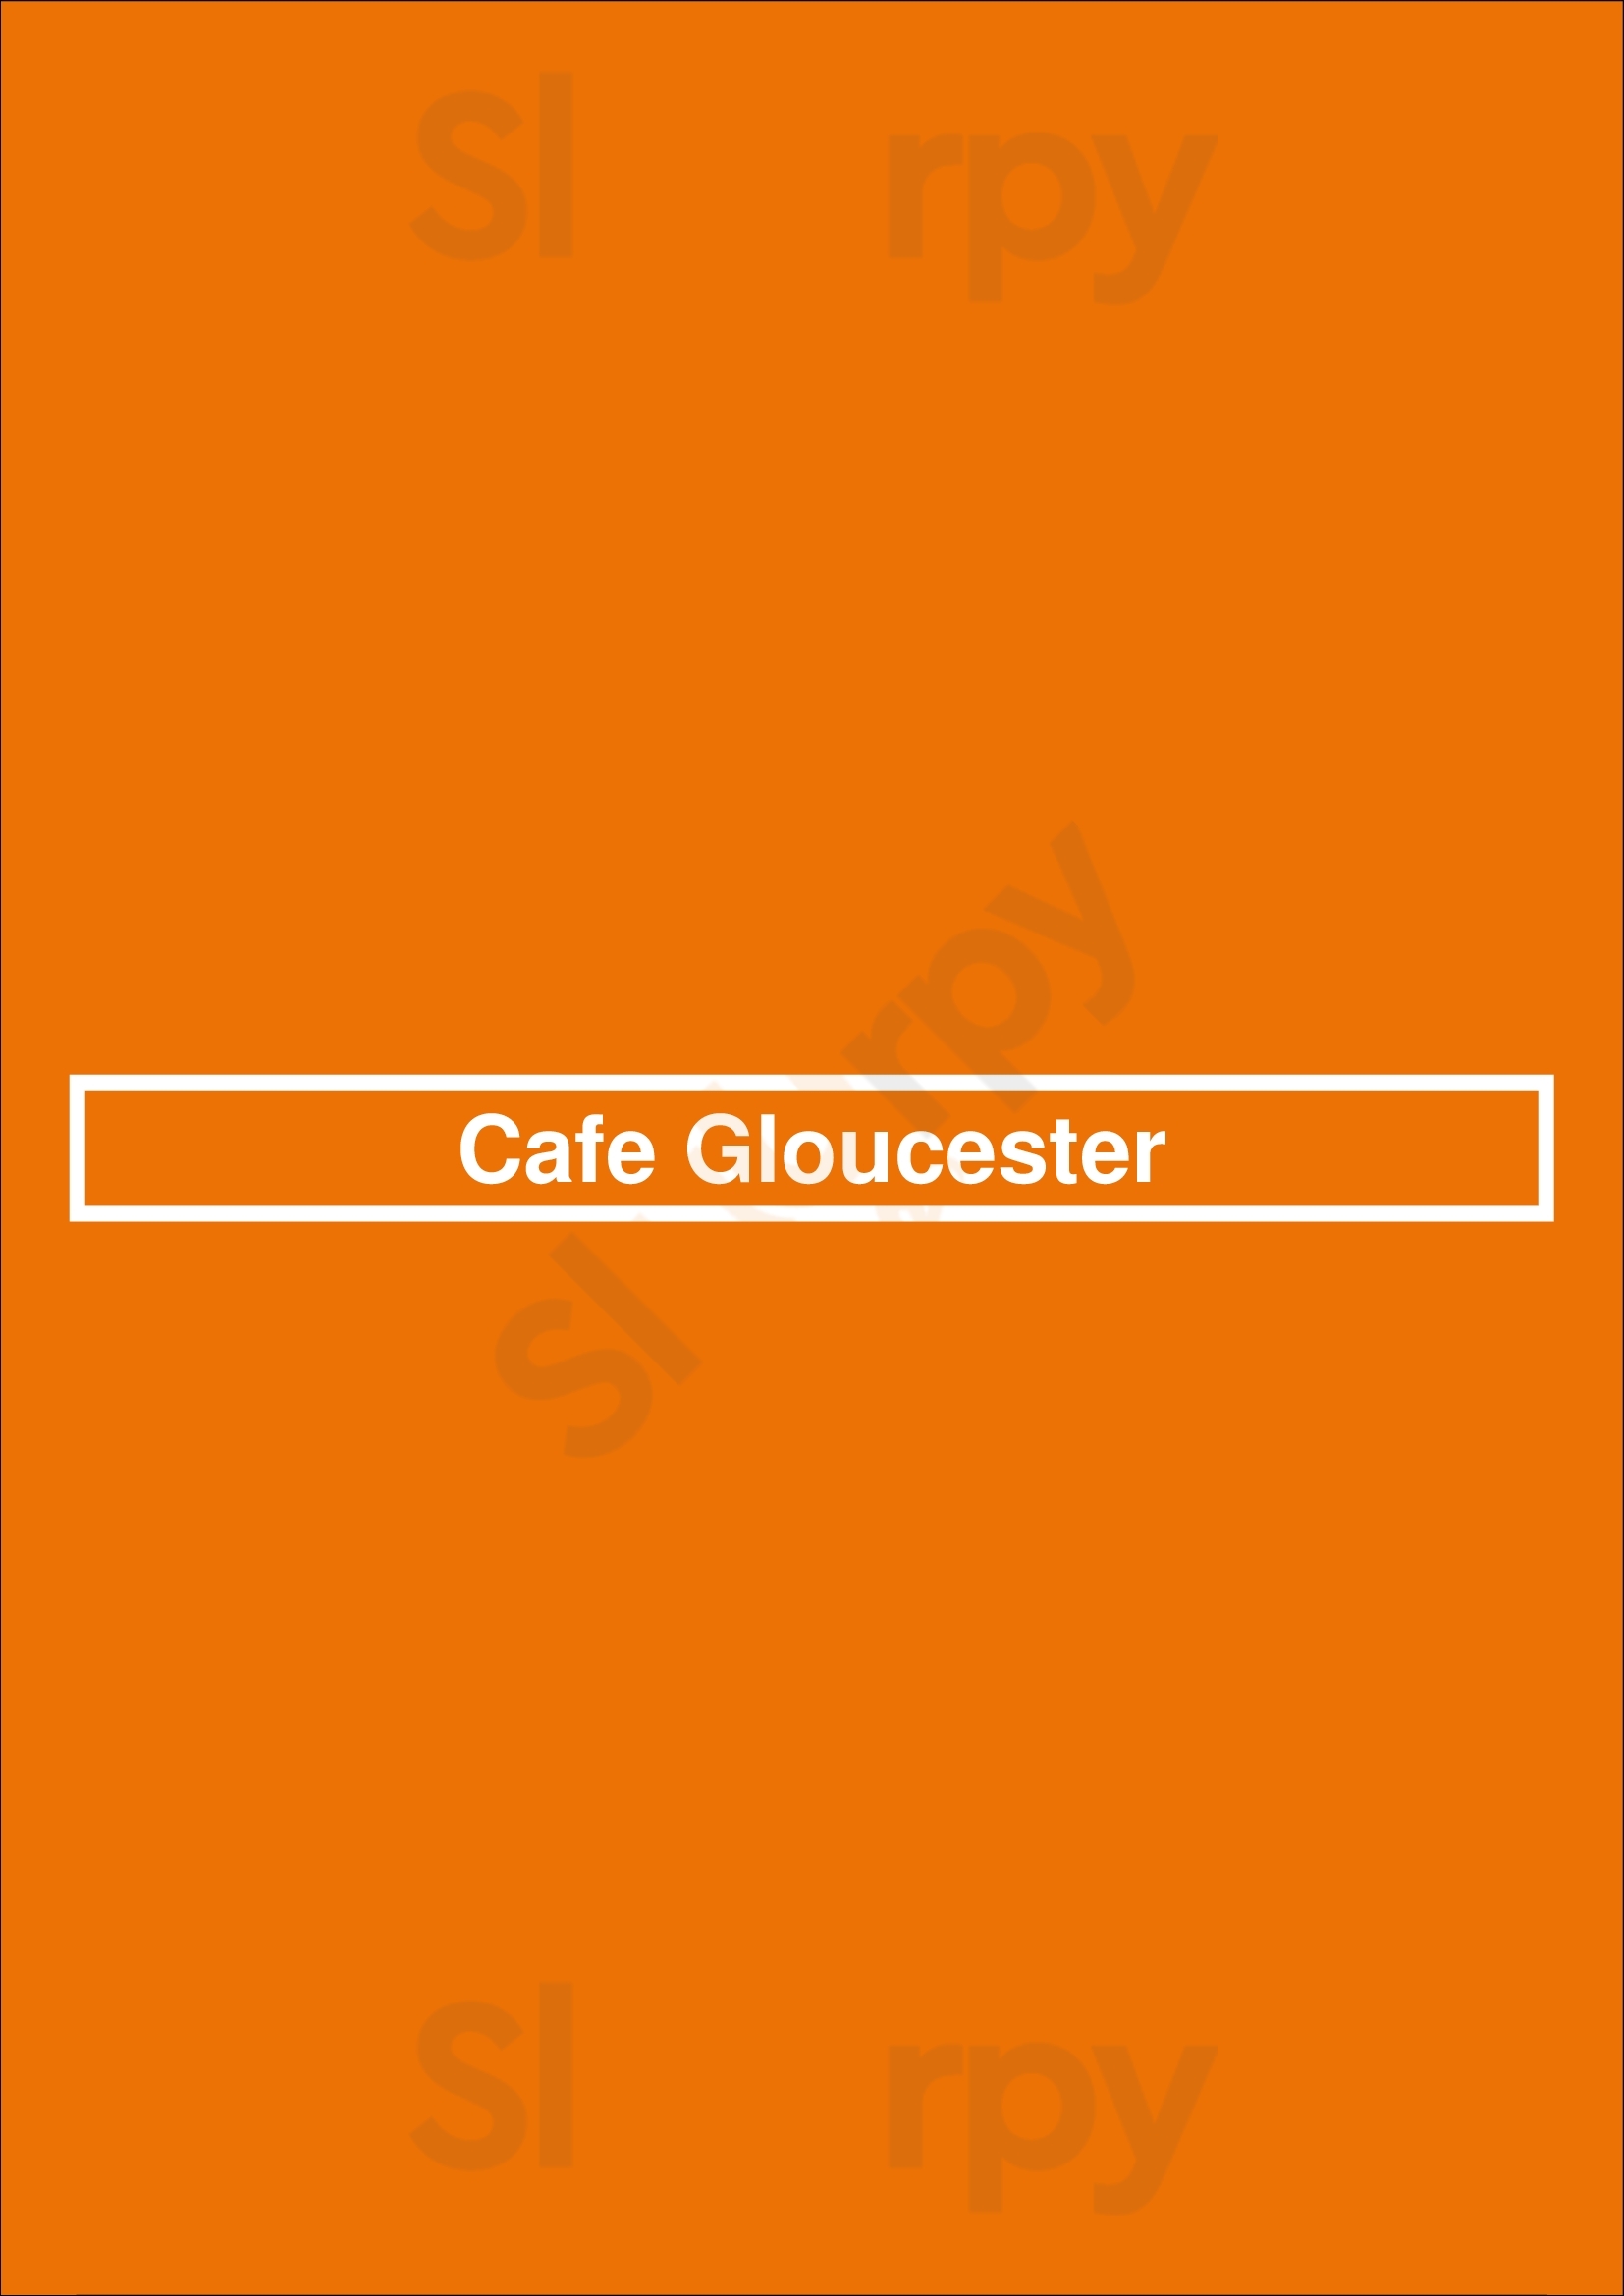 Cafe Gloucester Vancouver Menu - 1